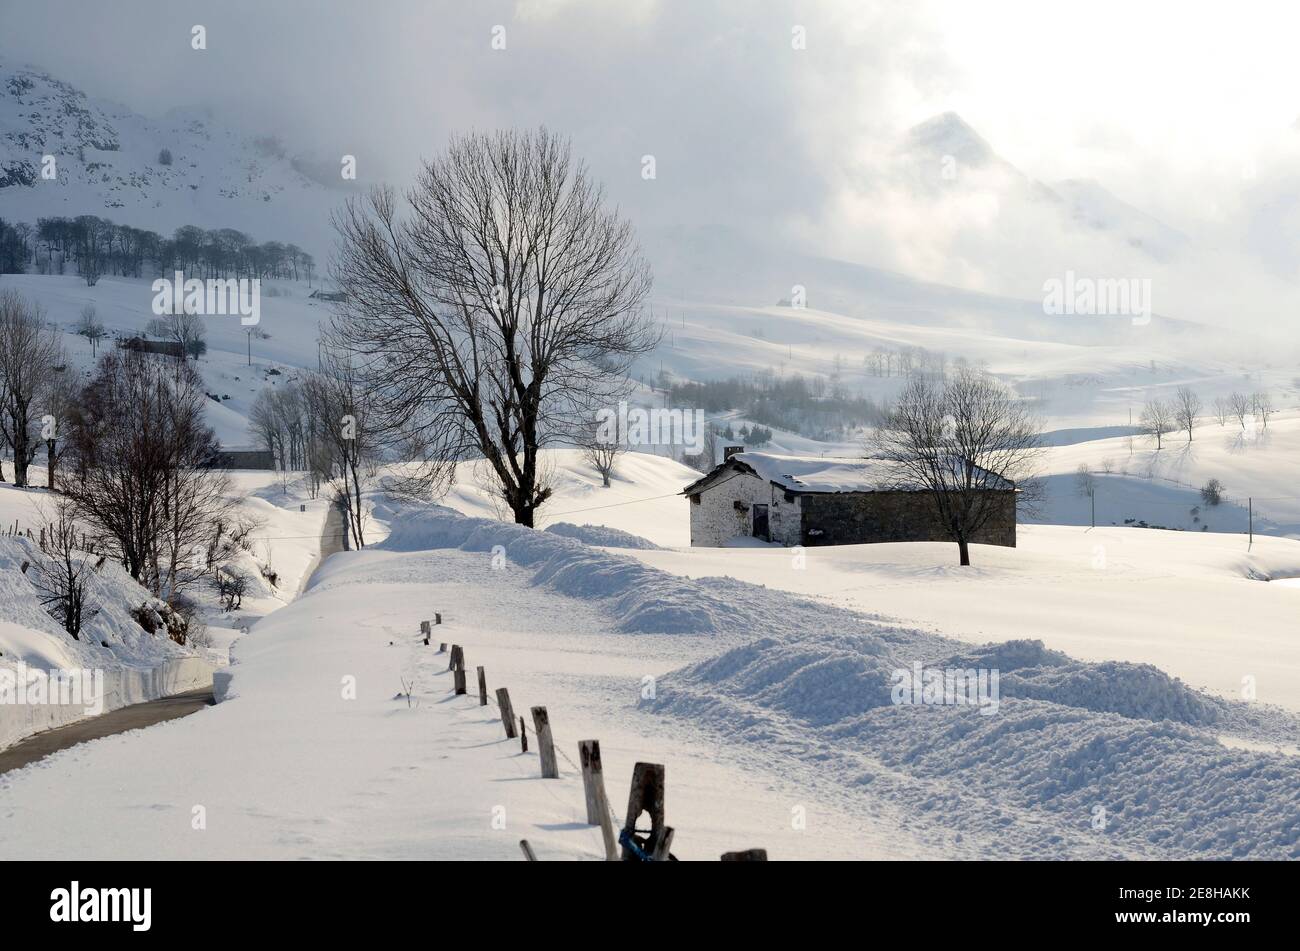 La neve copre i prati e le capanne dei pastori nella Valle del Pas (Valles pasiegos). Cantabria, Spagna Foto Stock